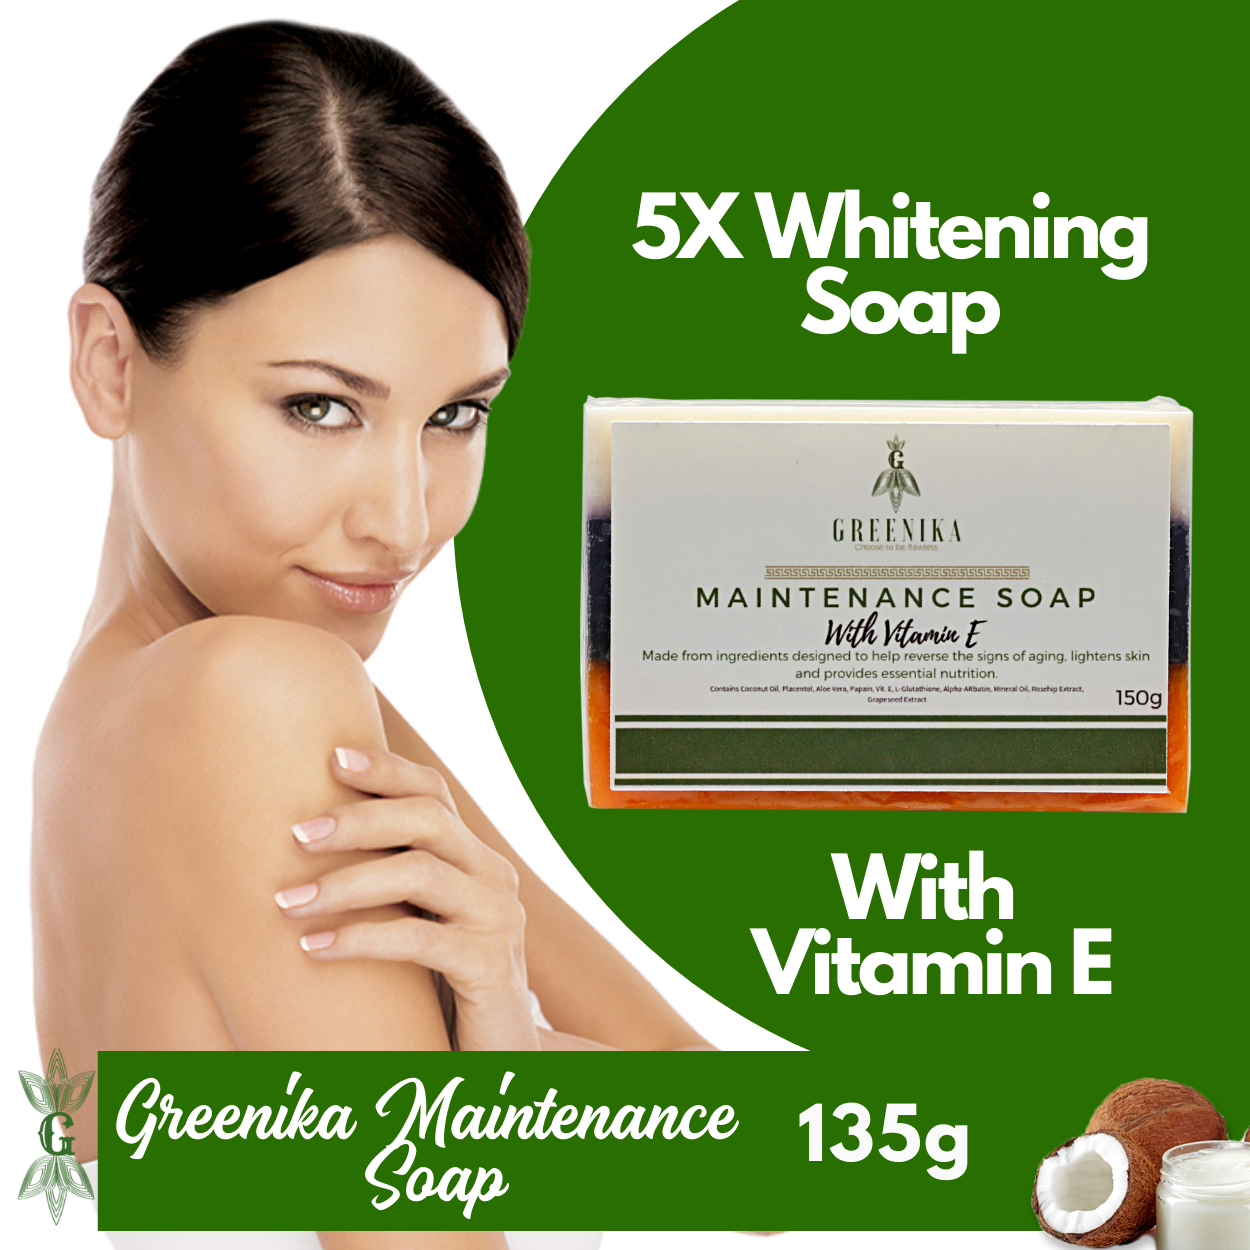 Greenika Maintenance Soap with Vitamin E